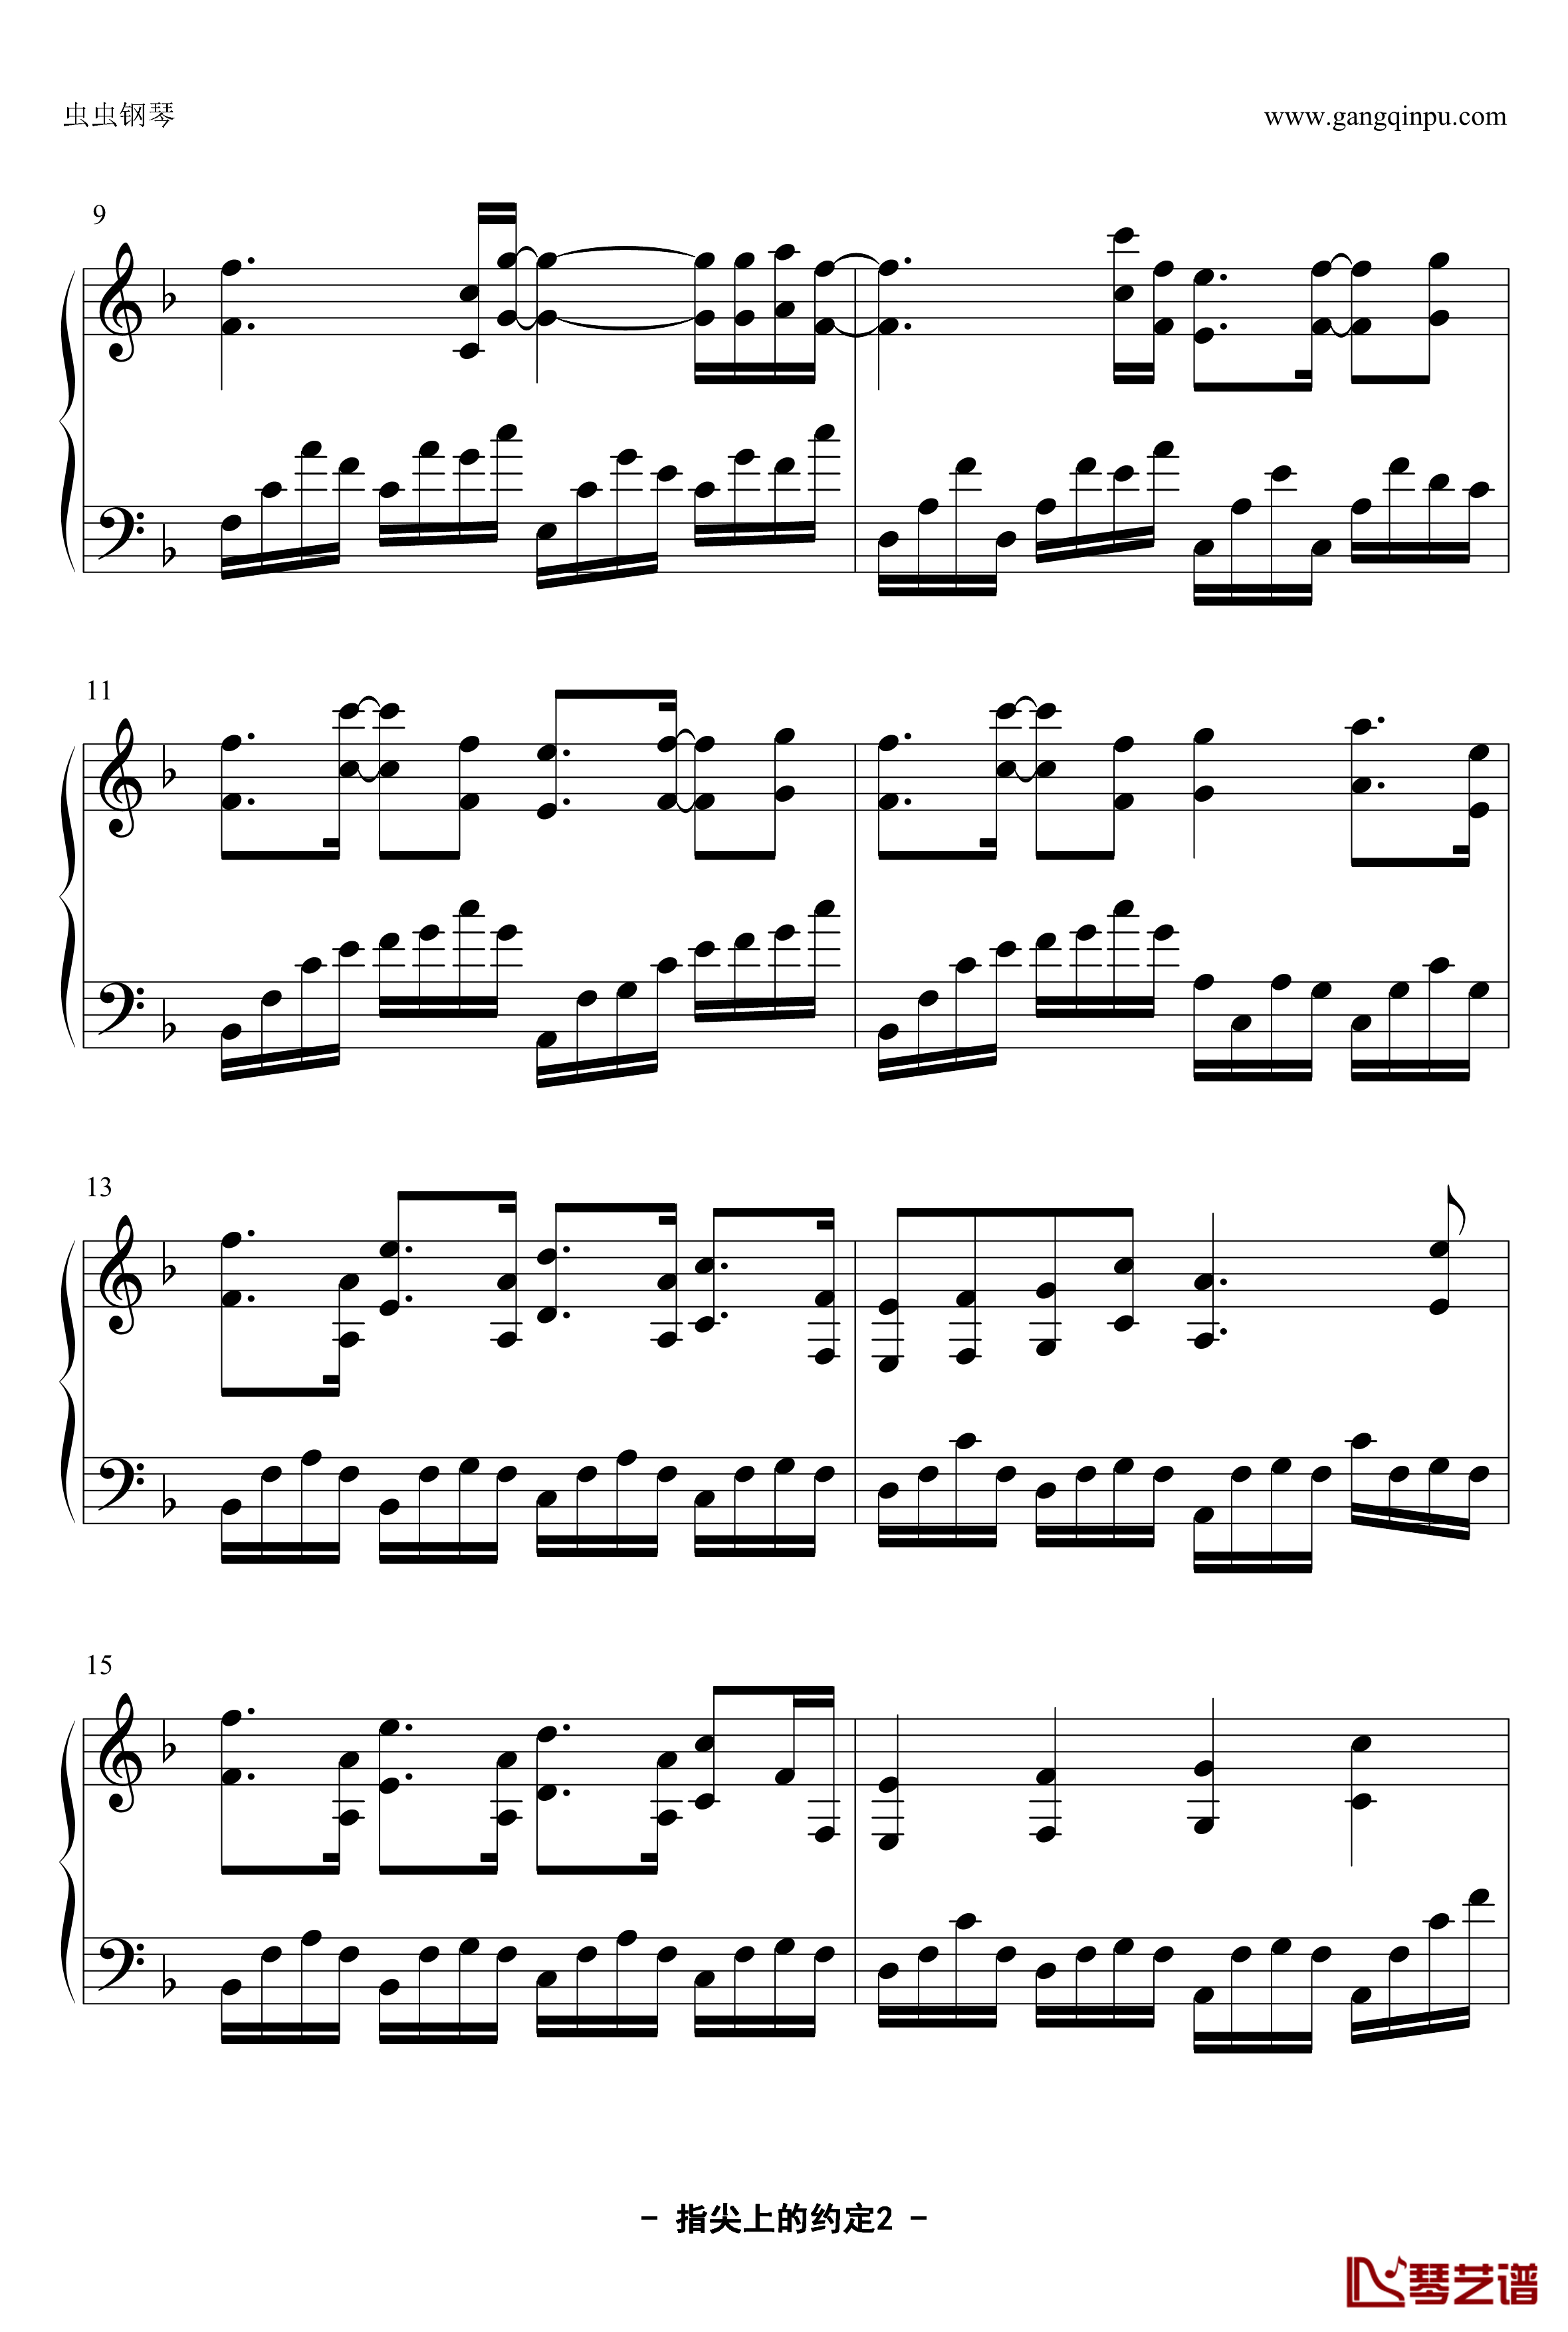 指尖上的约定钢琴谱-YUBIKIRI-GENMAN-Mili2